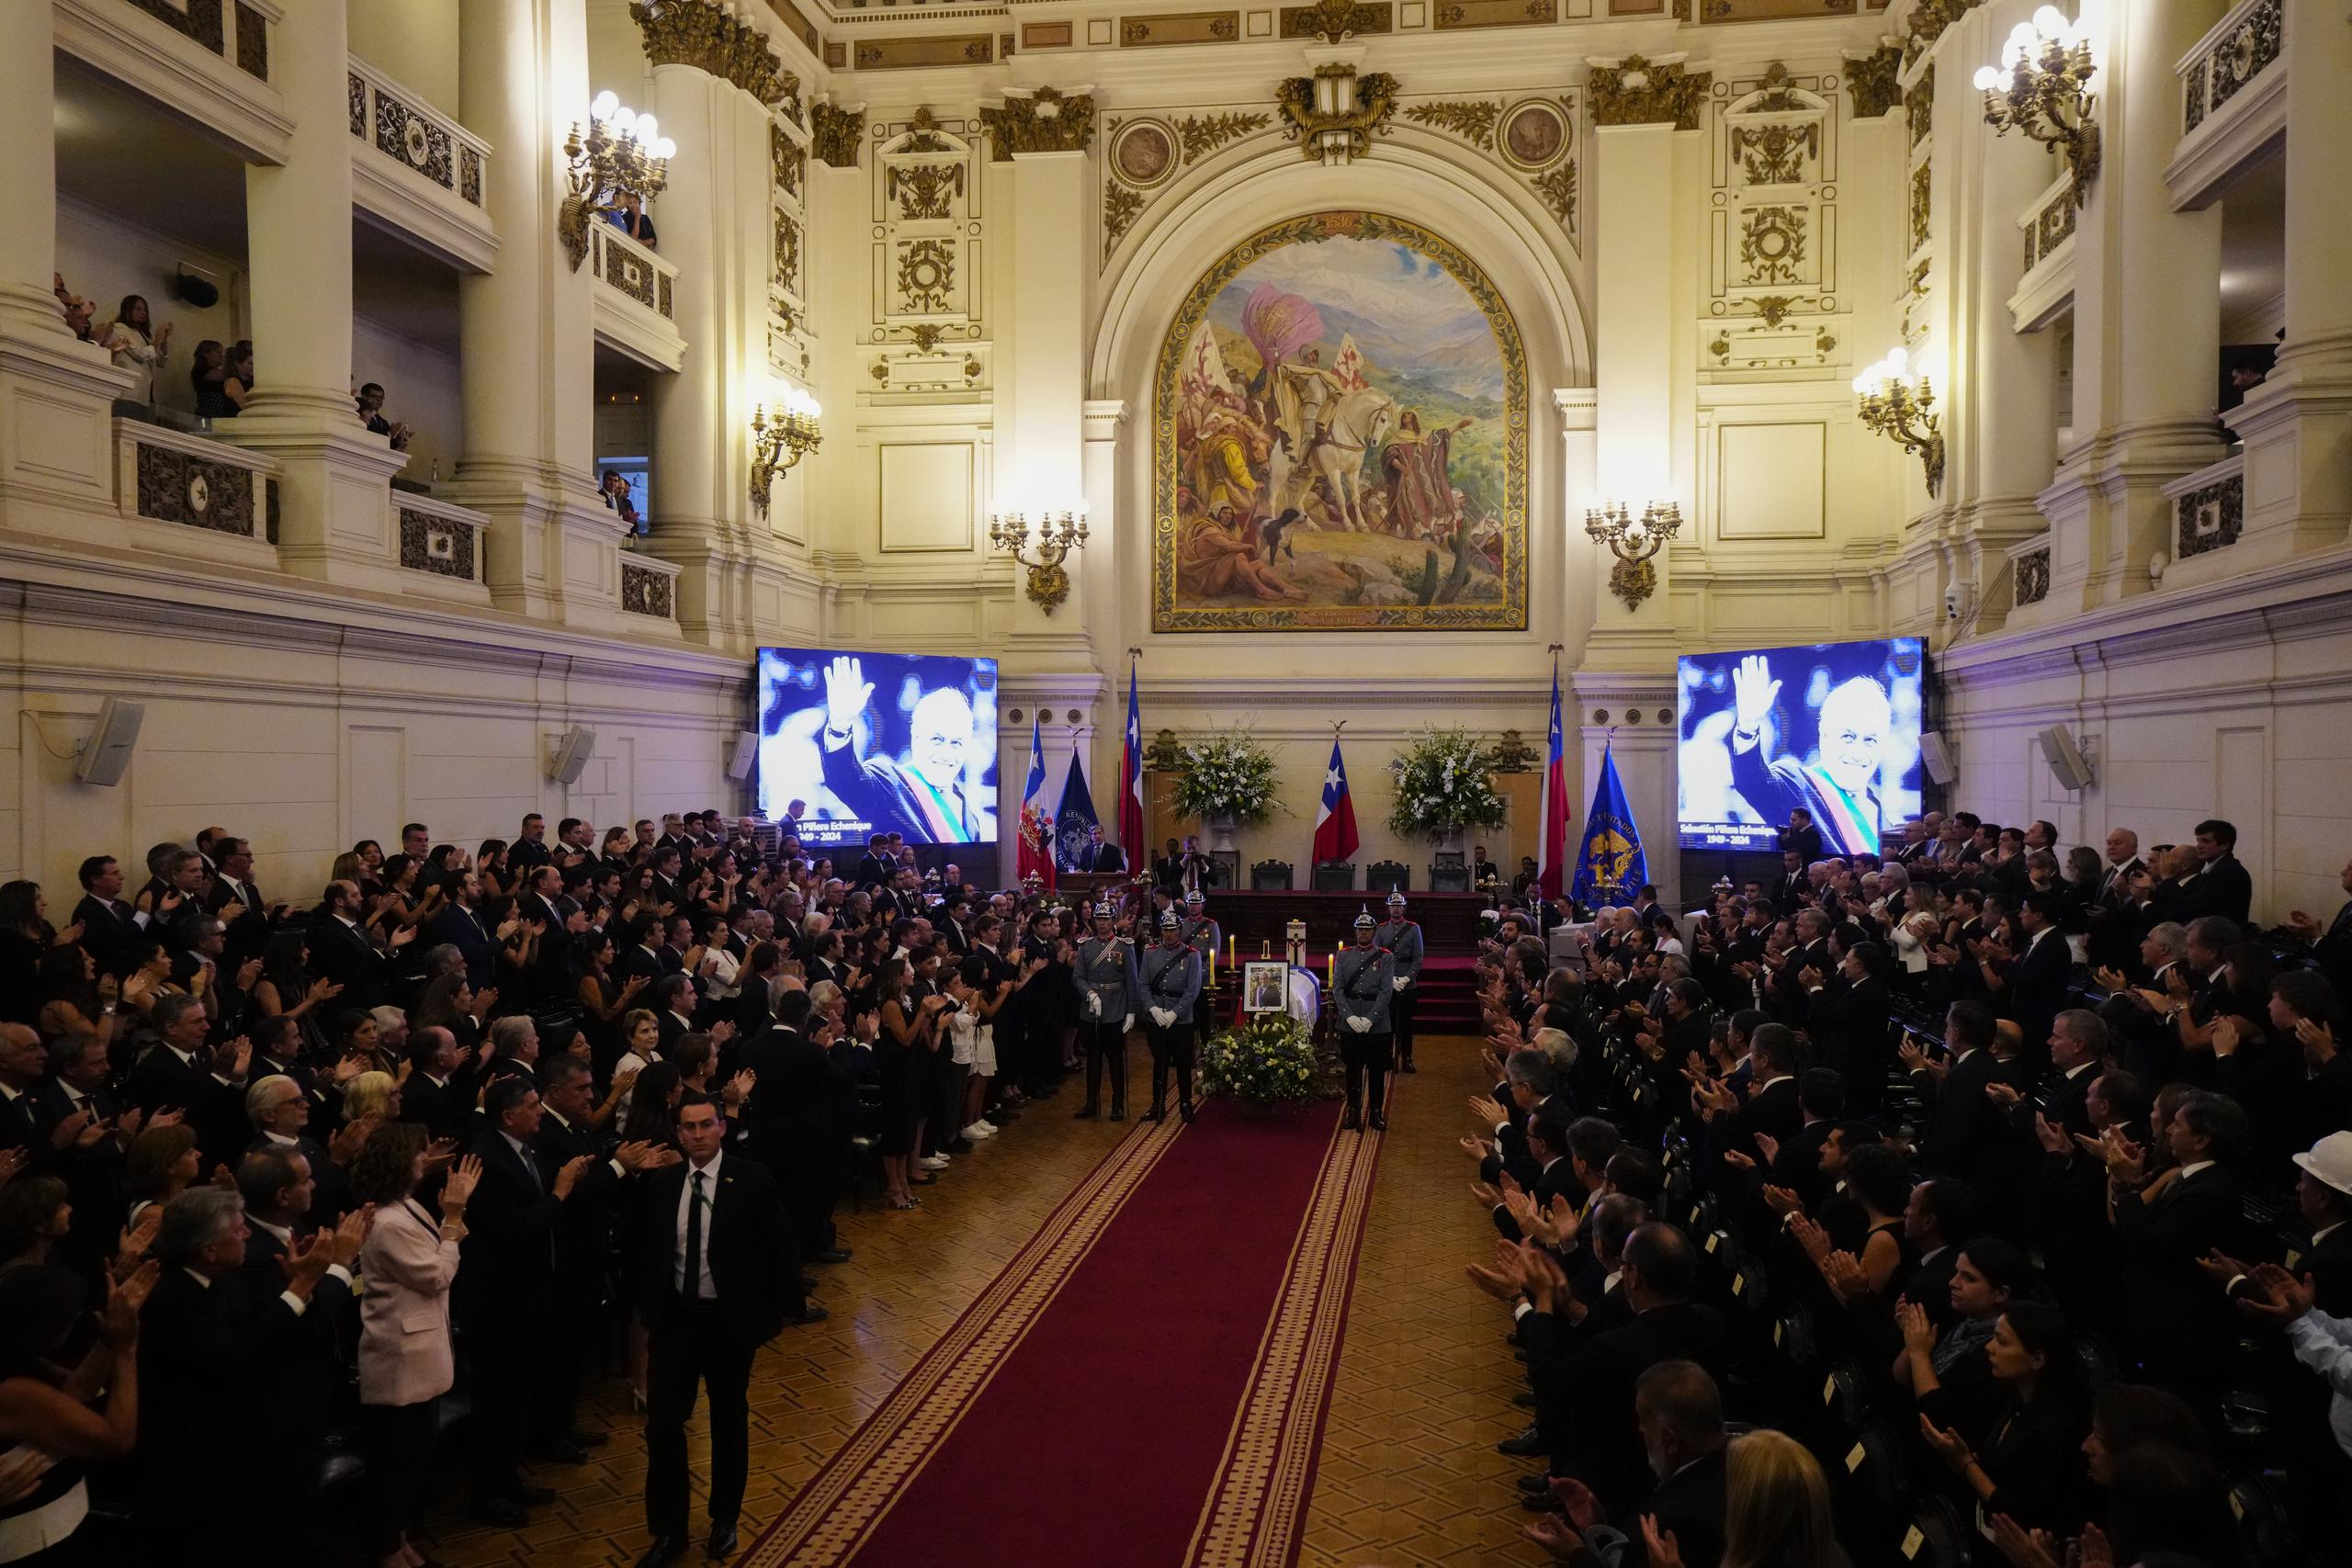 La gente aplaude durante el velorio del expresidente chileno Sebastián Piñera en el Congreso en Santiago, Chile. El dos veces expresidente murió el 6 de febrero en un accidente de helicóptero. Tenía 74 años.